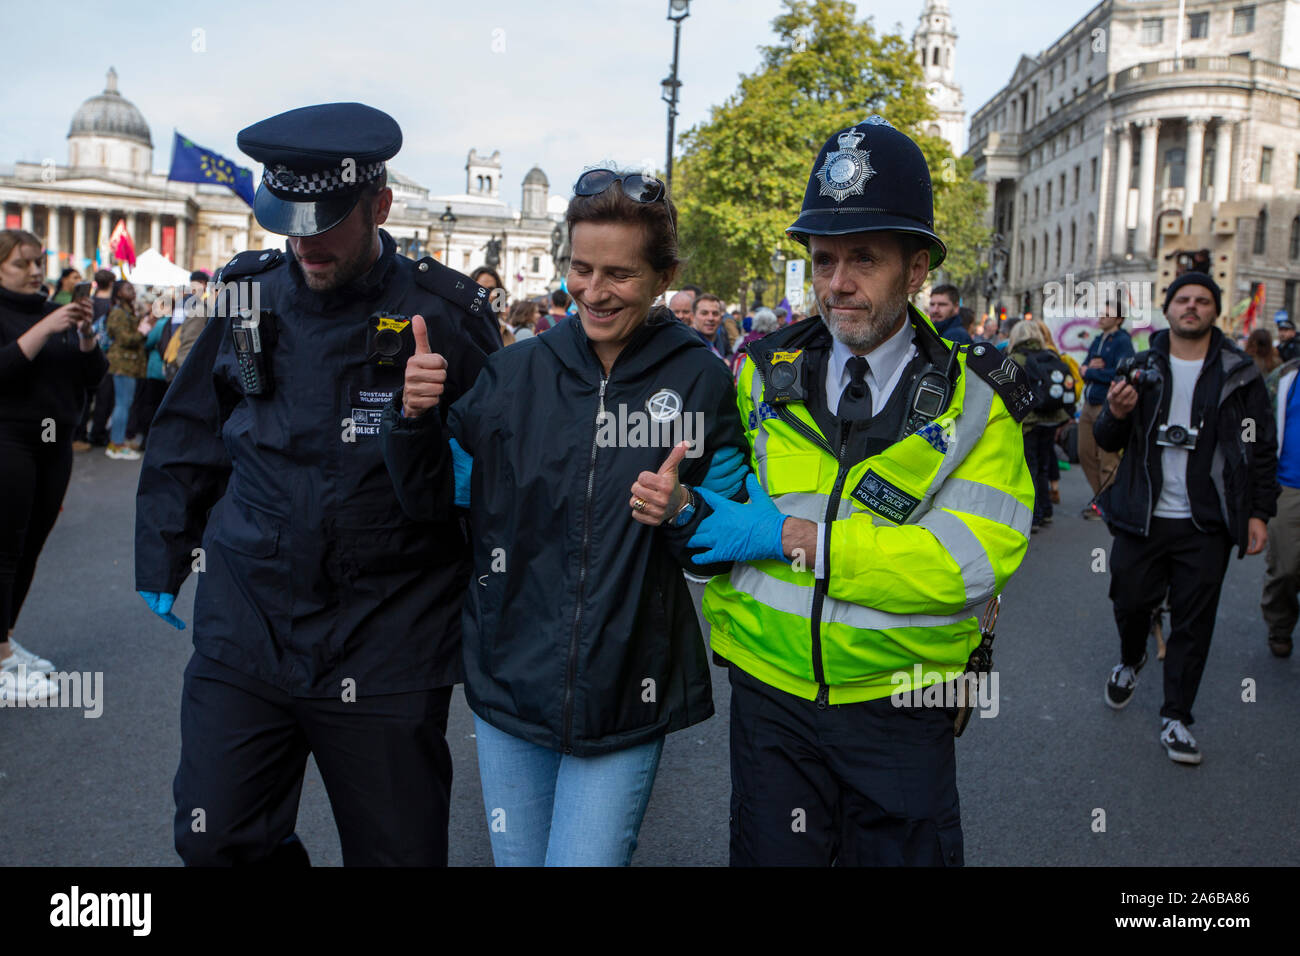 London, 10. Oktober 2019, vom Aussterben Rebellion Demonstration und Besetzung des Trafalgar Square. Polizei in der Menschenmenge in der Straße, Verhaftungen vorzunehmen. Stockfoto